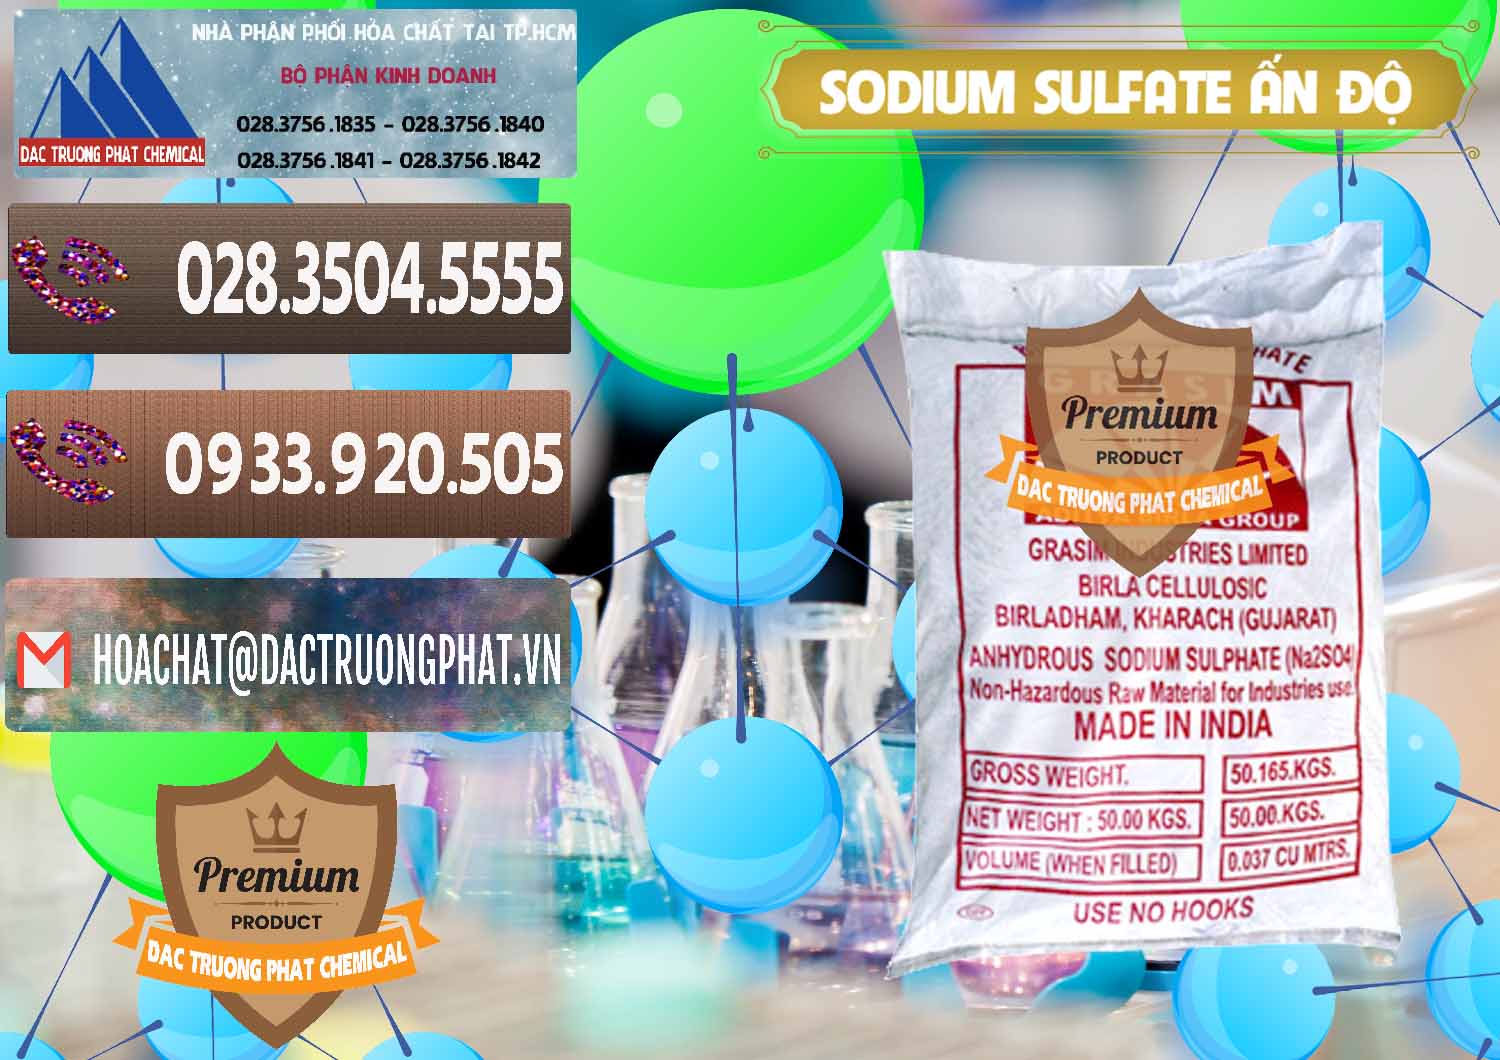 Nơi chuyên kinh doanh _ bán Sodium Sulphate - Muối Sunfat Na2SO4 Aditya Birla Grasim Ấn Độ India - 0462 - Công ty nhập khẩu ( phân phối ) hóa chất tại TP.HCM - hoachatviet.net